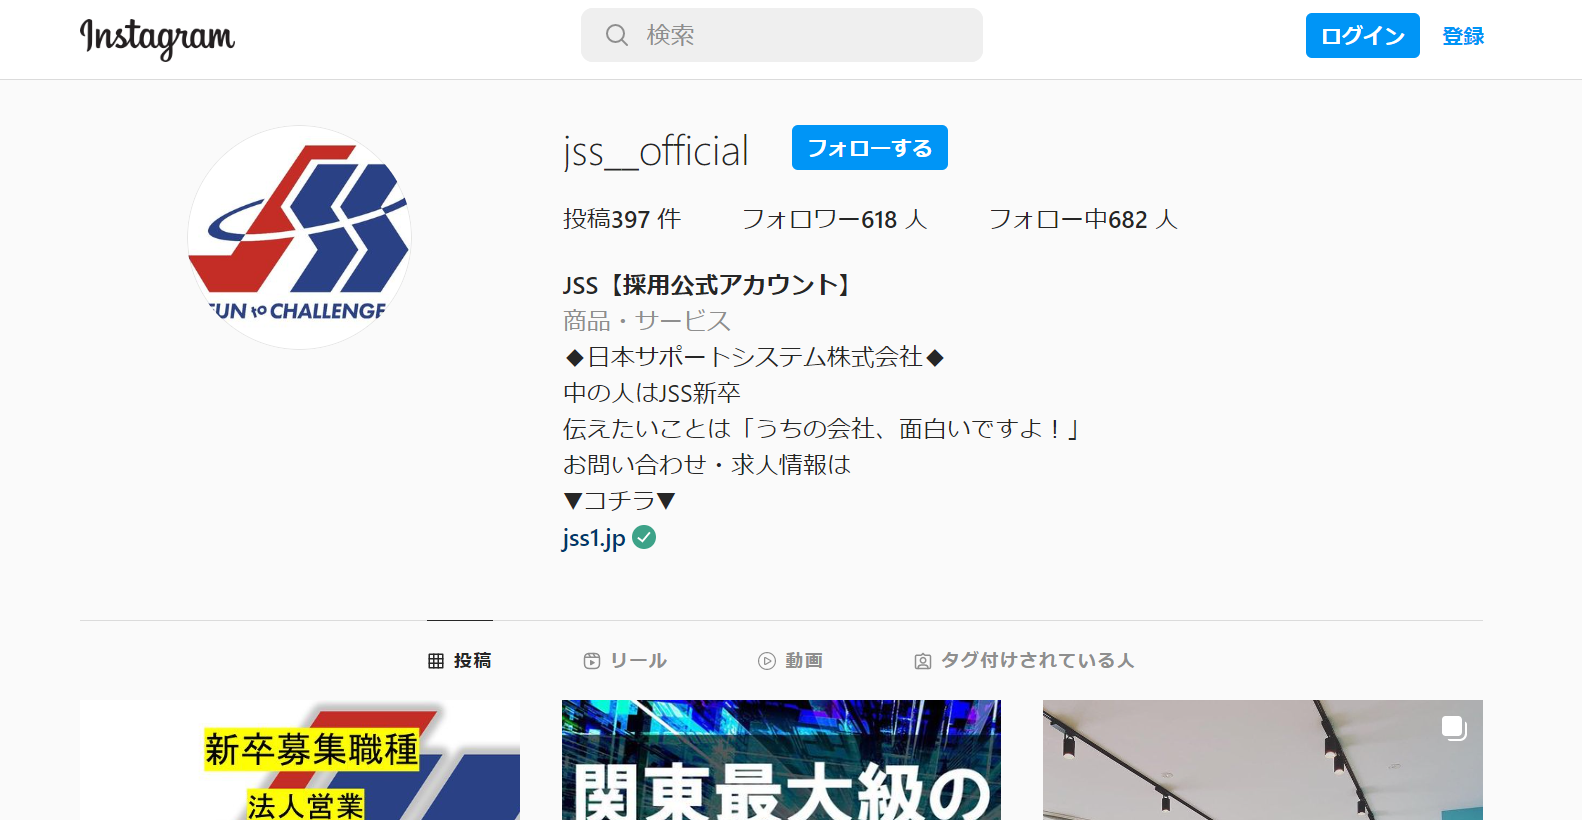 日本サポートシステム株式会社Instagram